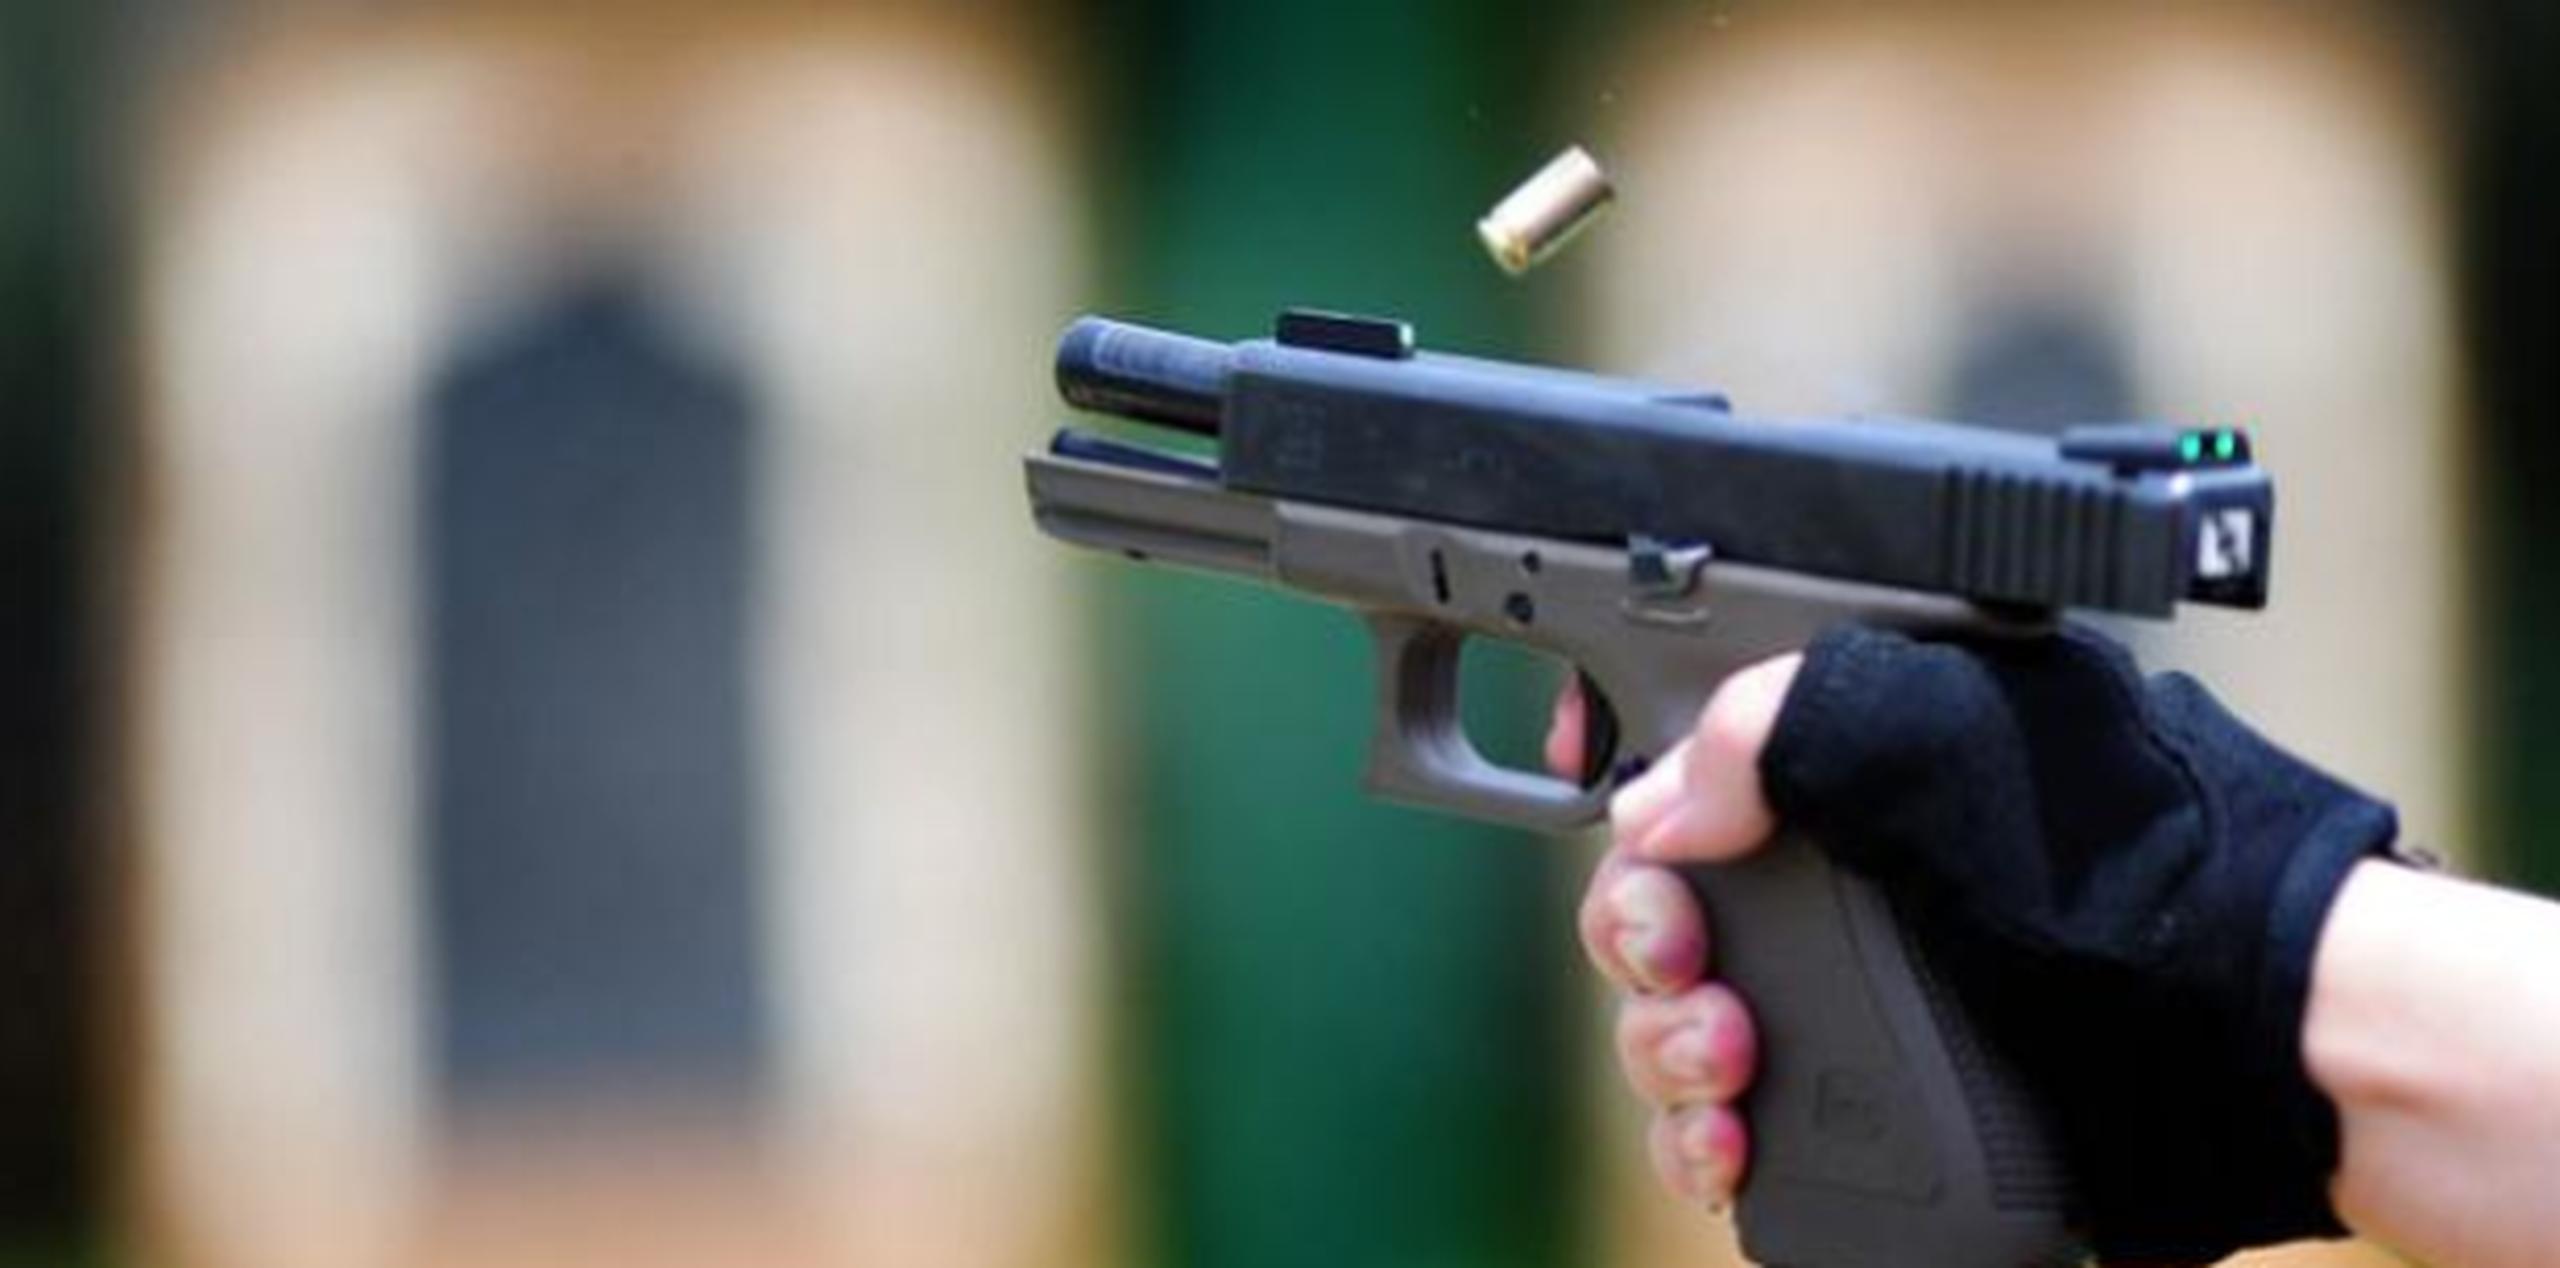 El acto de disparar las armas de fuego de los alcaldes fue incidental y en una actividad legítima, según el Departamento de Justicia.